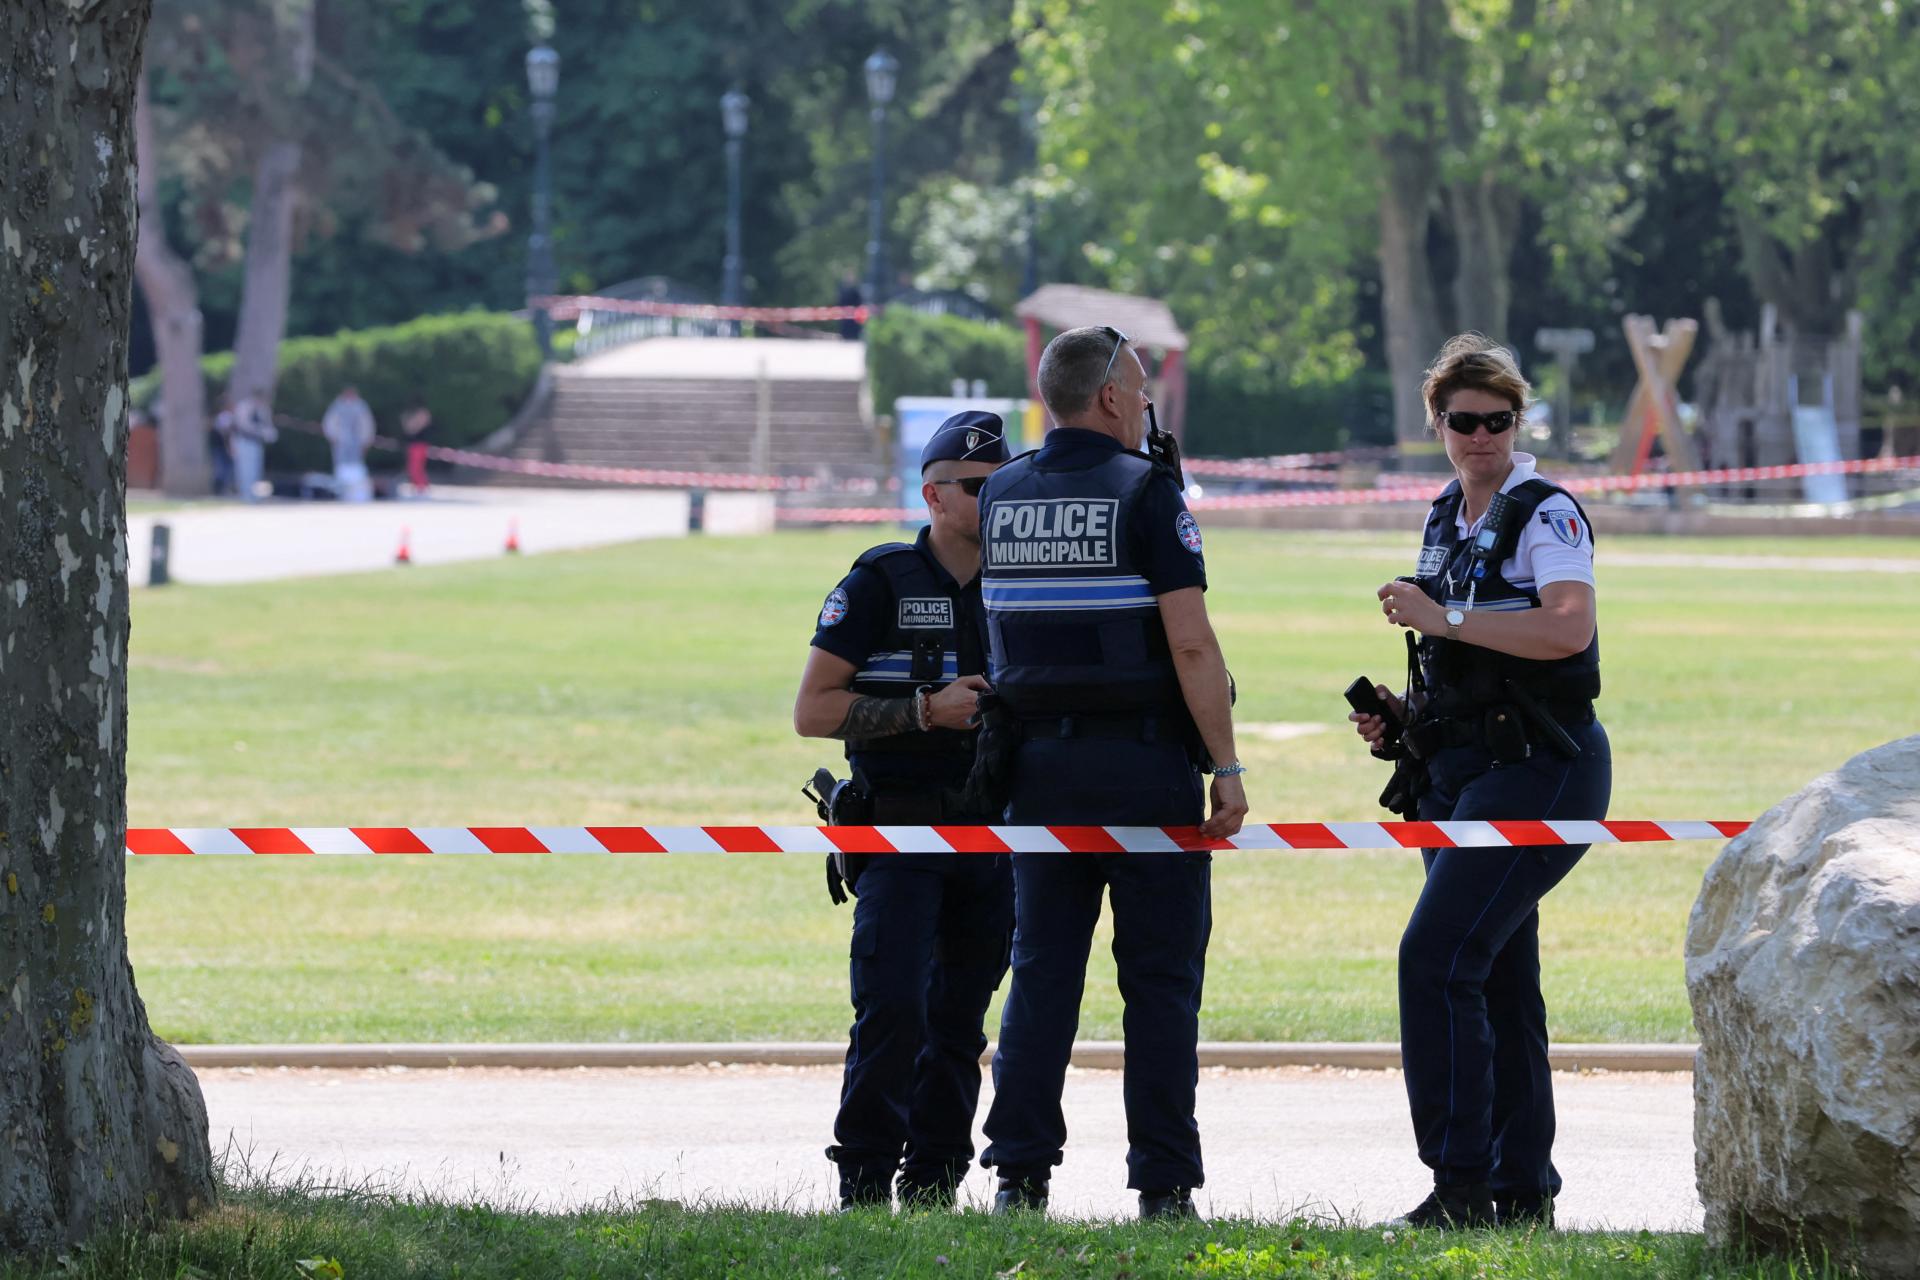 Un homme qui a attaqué des enfants avec un couteau en France a été accusé de tentative de meurtre